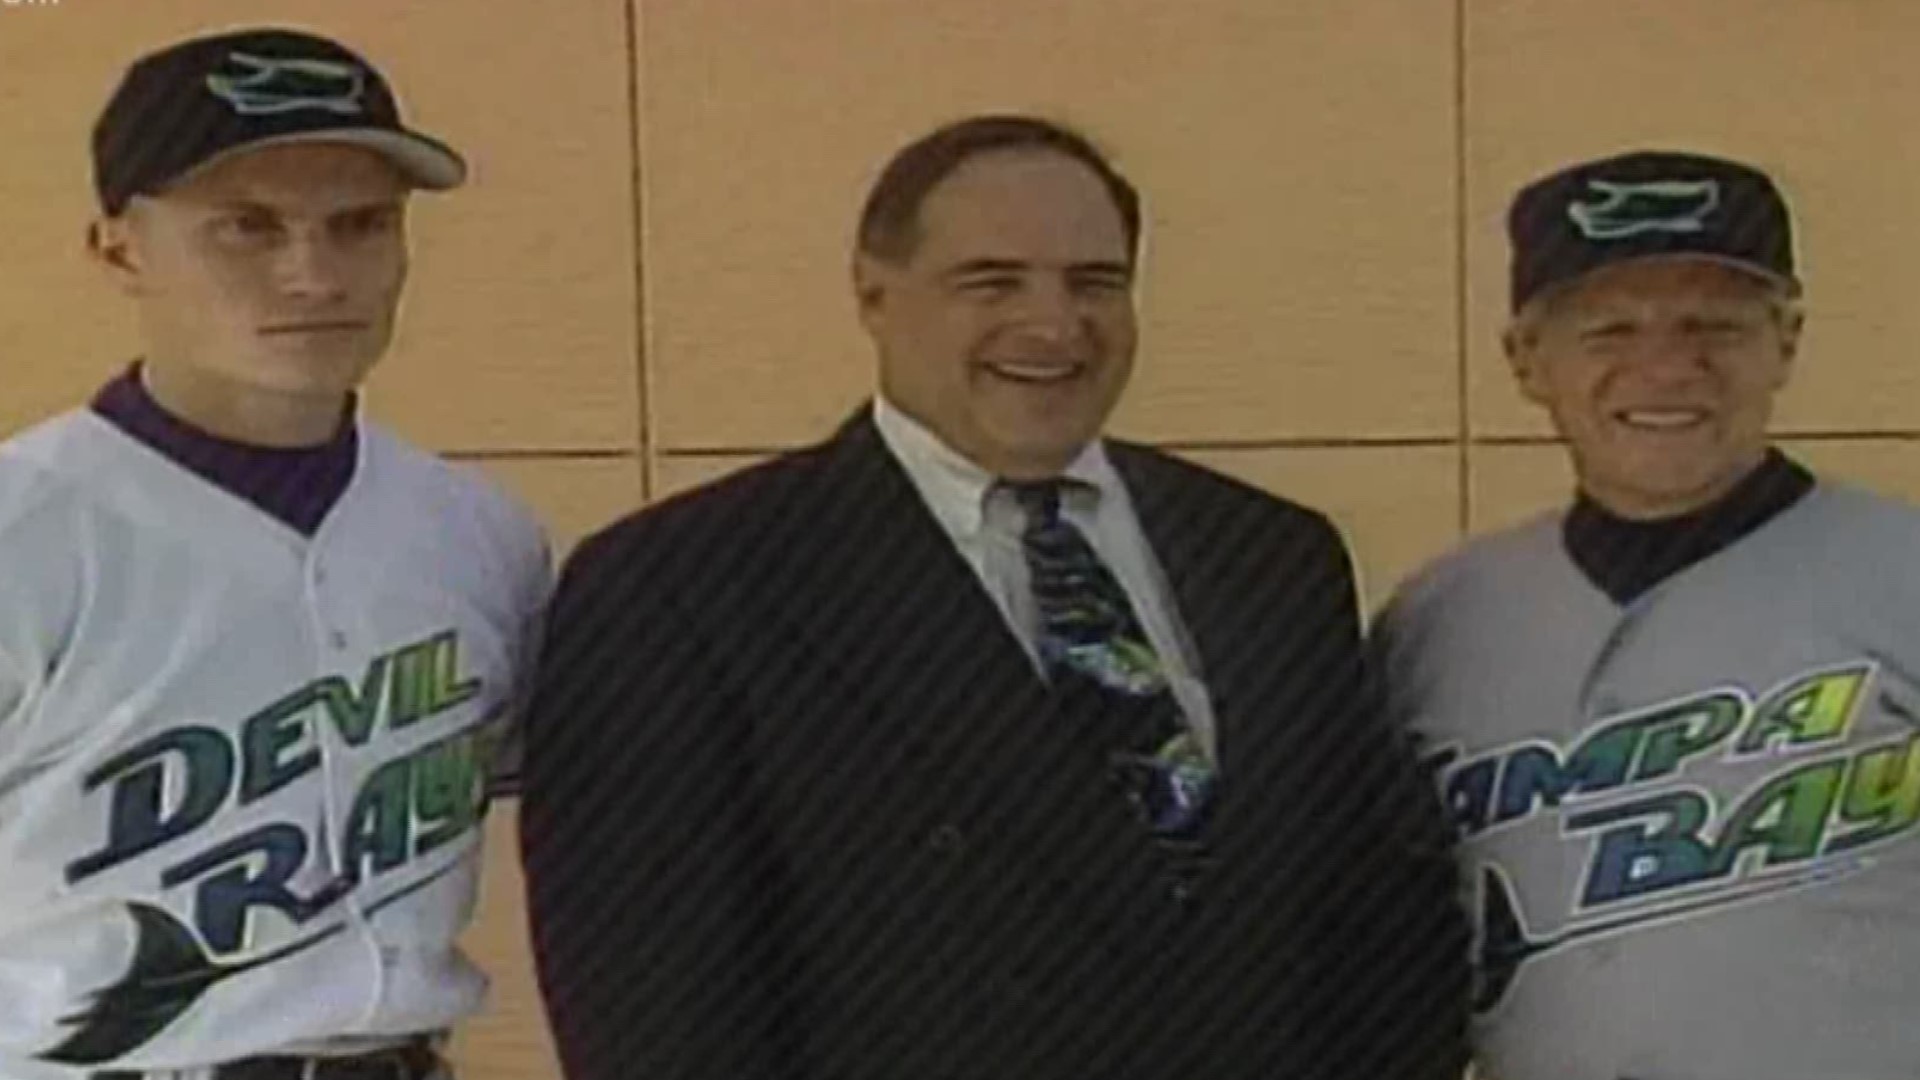 Original Tampa Bay Rays owner Vincent Naimoli dies at 81